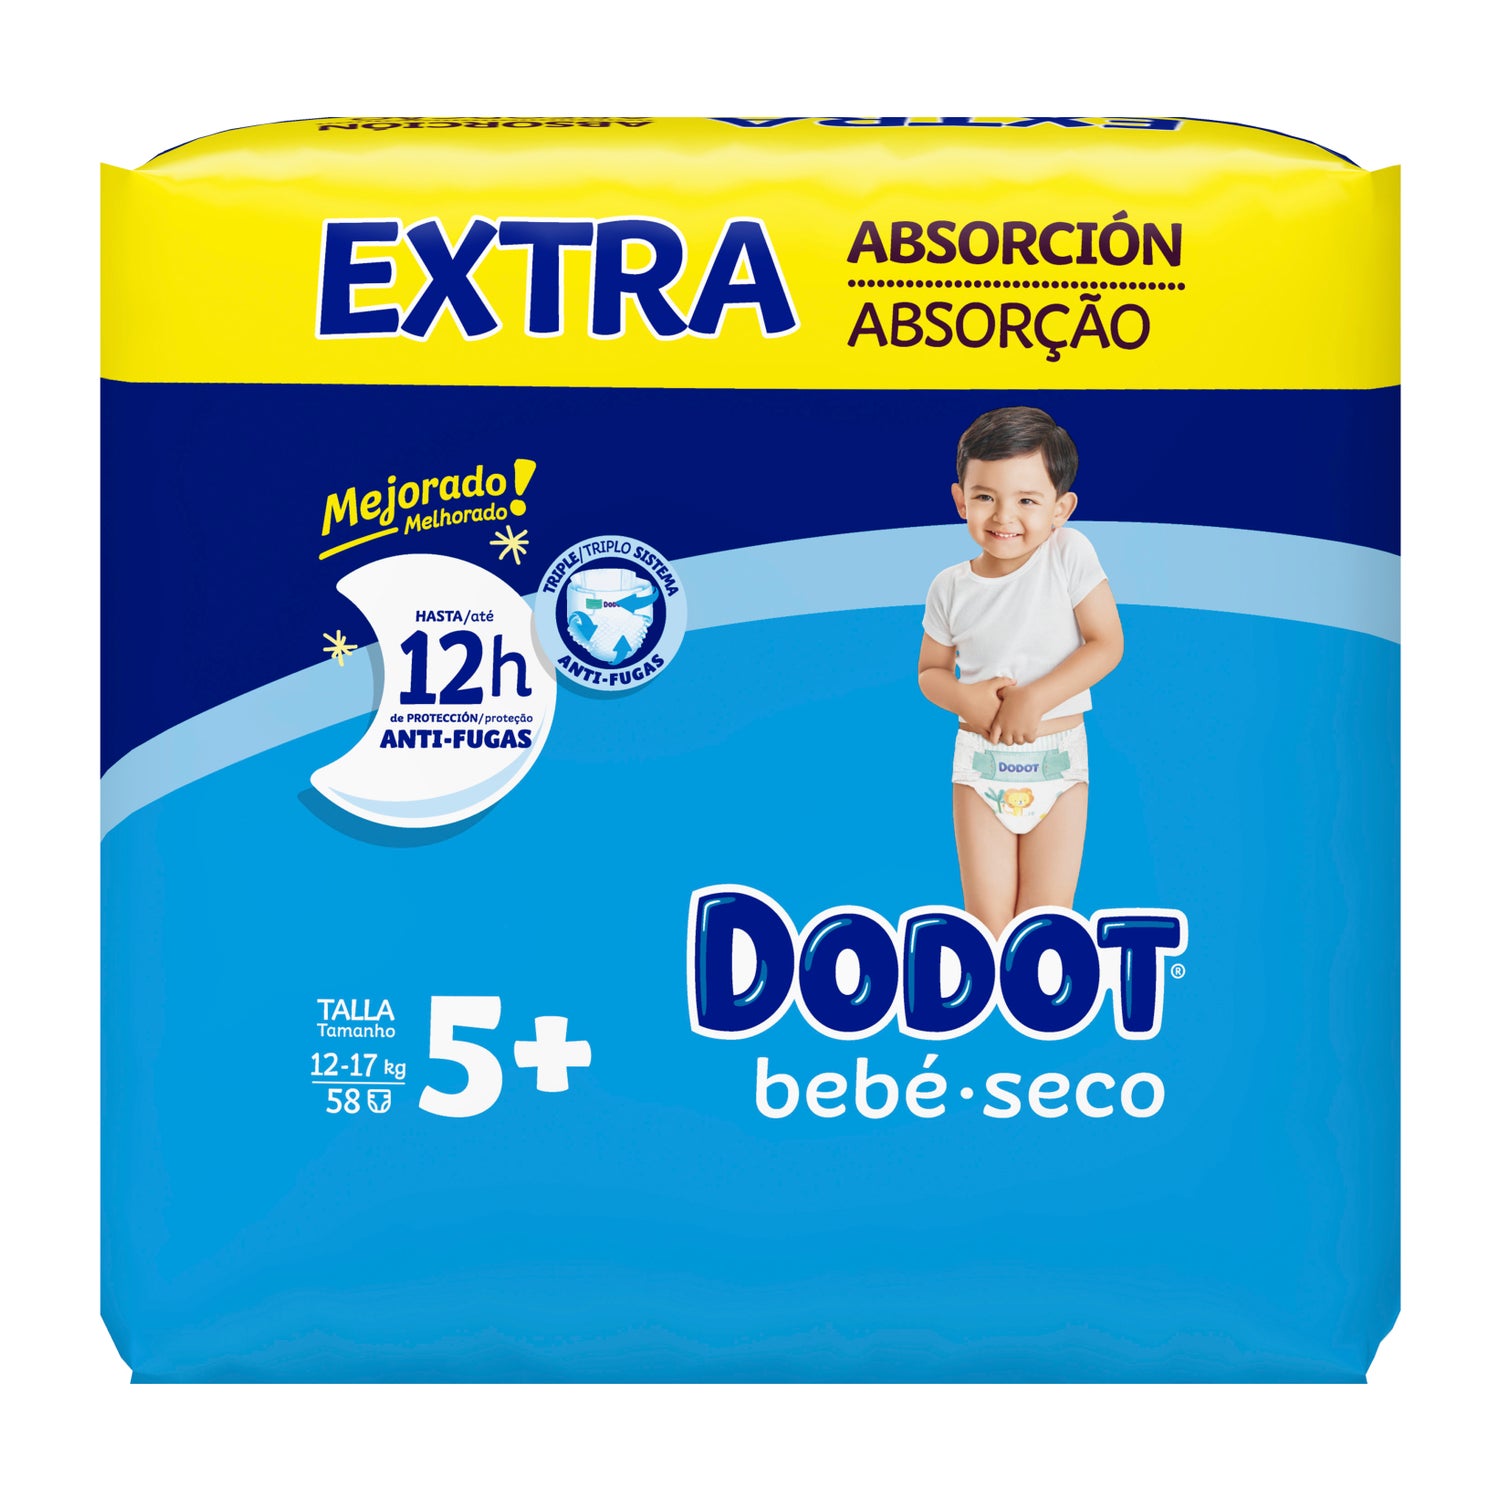 Dodot - Cuando compruebas que tu pañal Dodot Cuidado Total es más